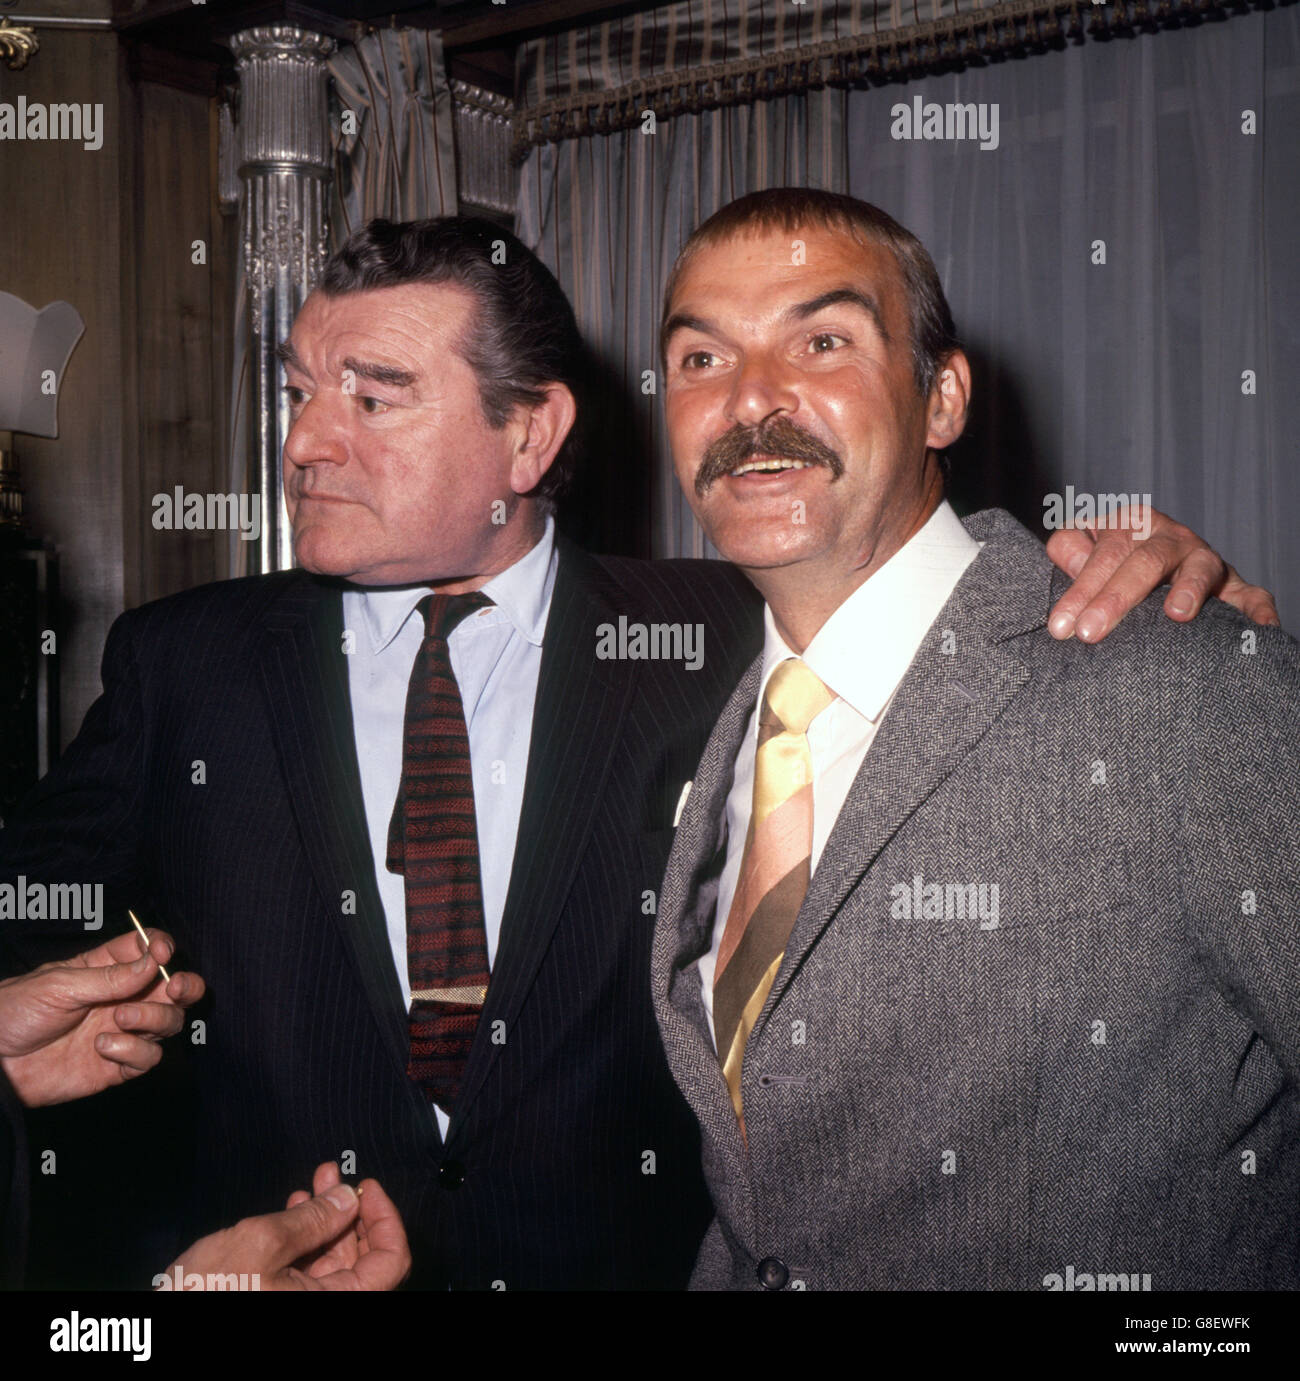 Entretenimiento - Jack Hawkins. El actor británico Jack Hawkins (l), fotografiado con el actor Stanley Baker (r) en un evento en Londres. Foto de stock